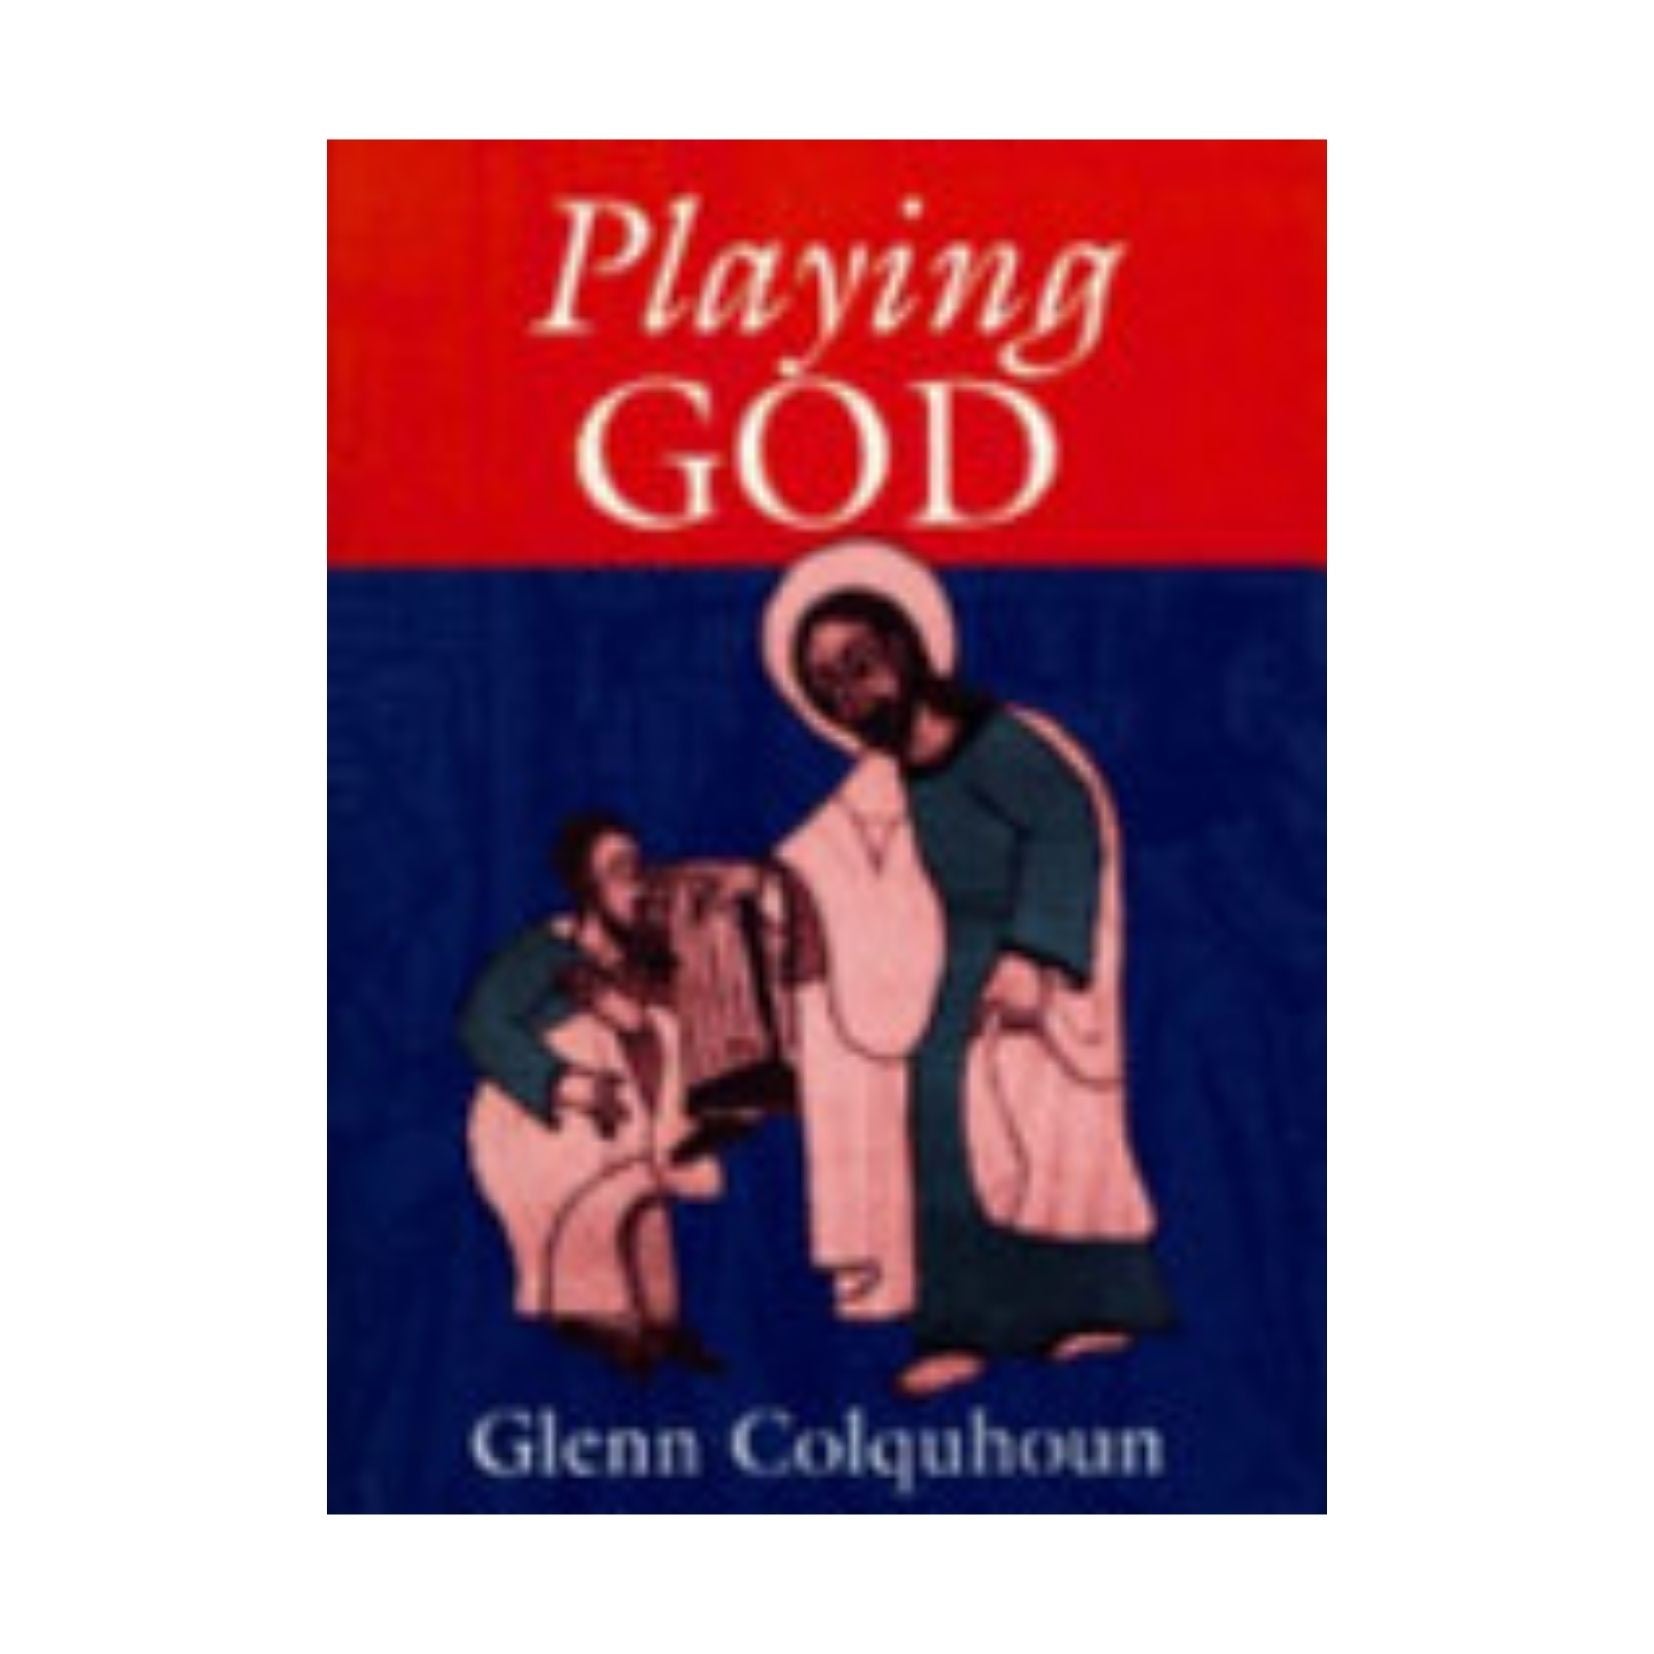 Playing God by glenn-colquhoun